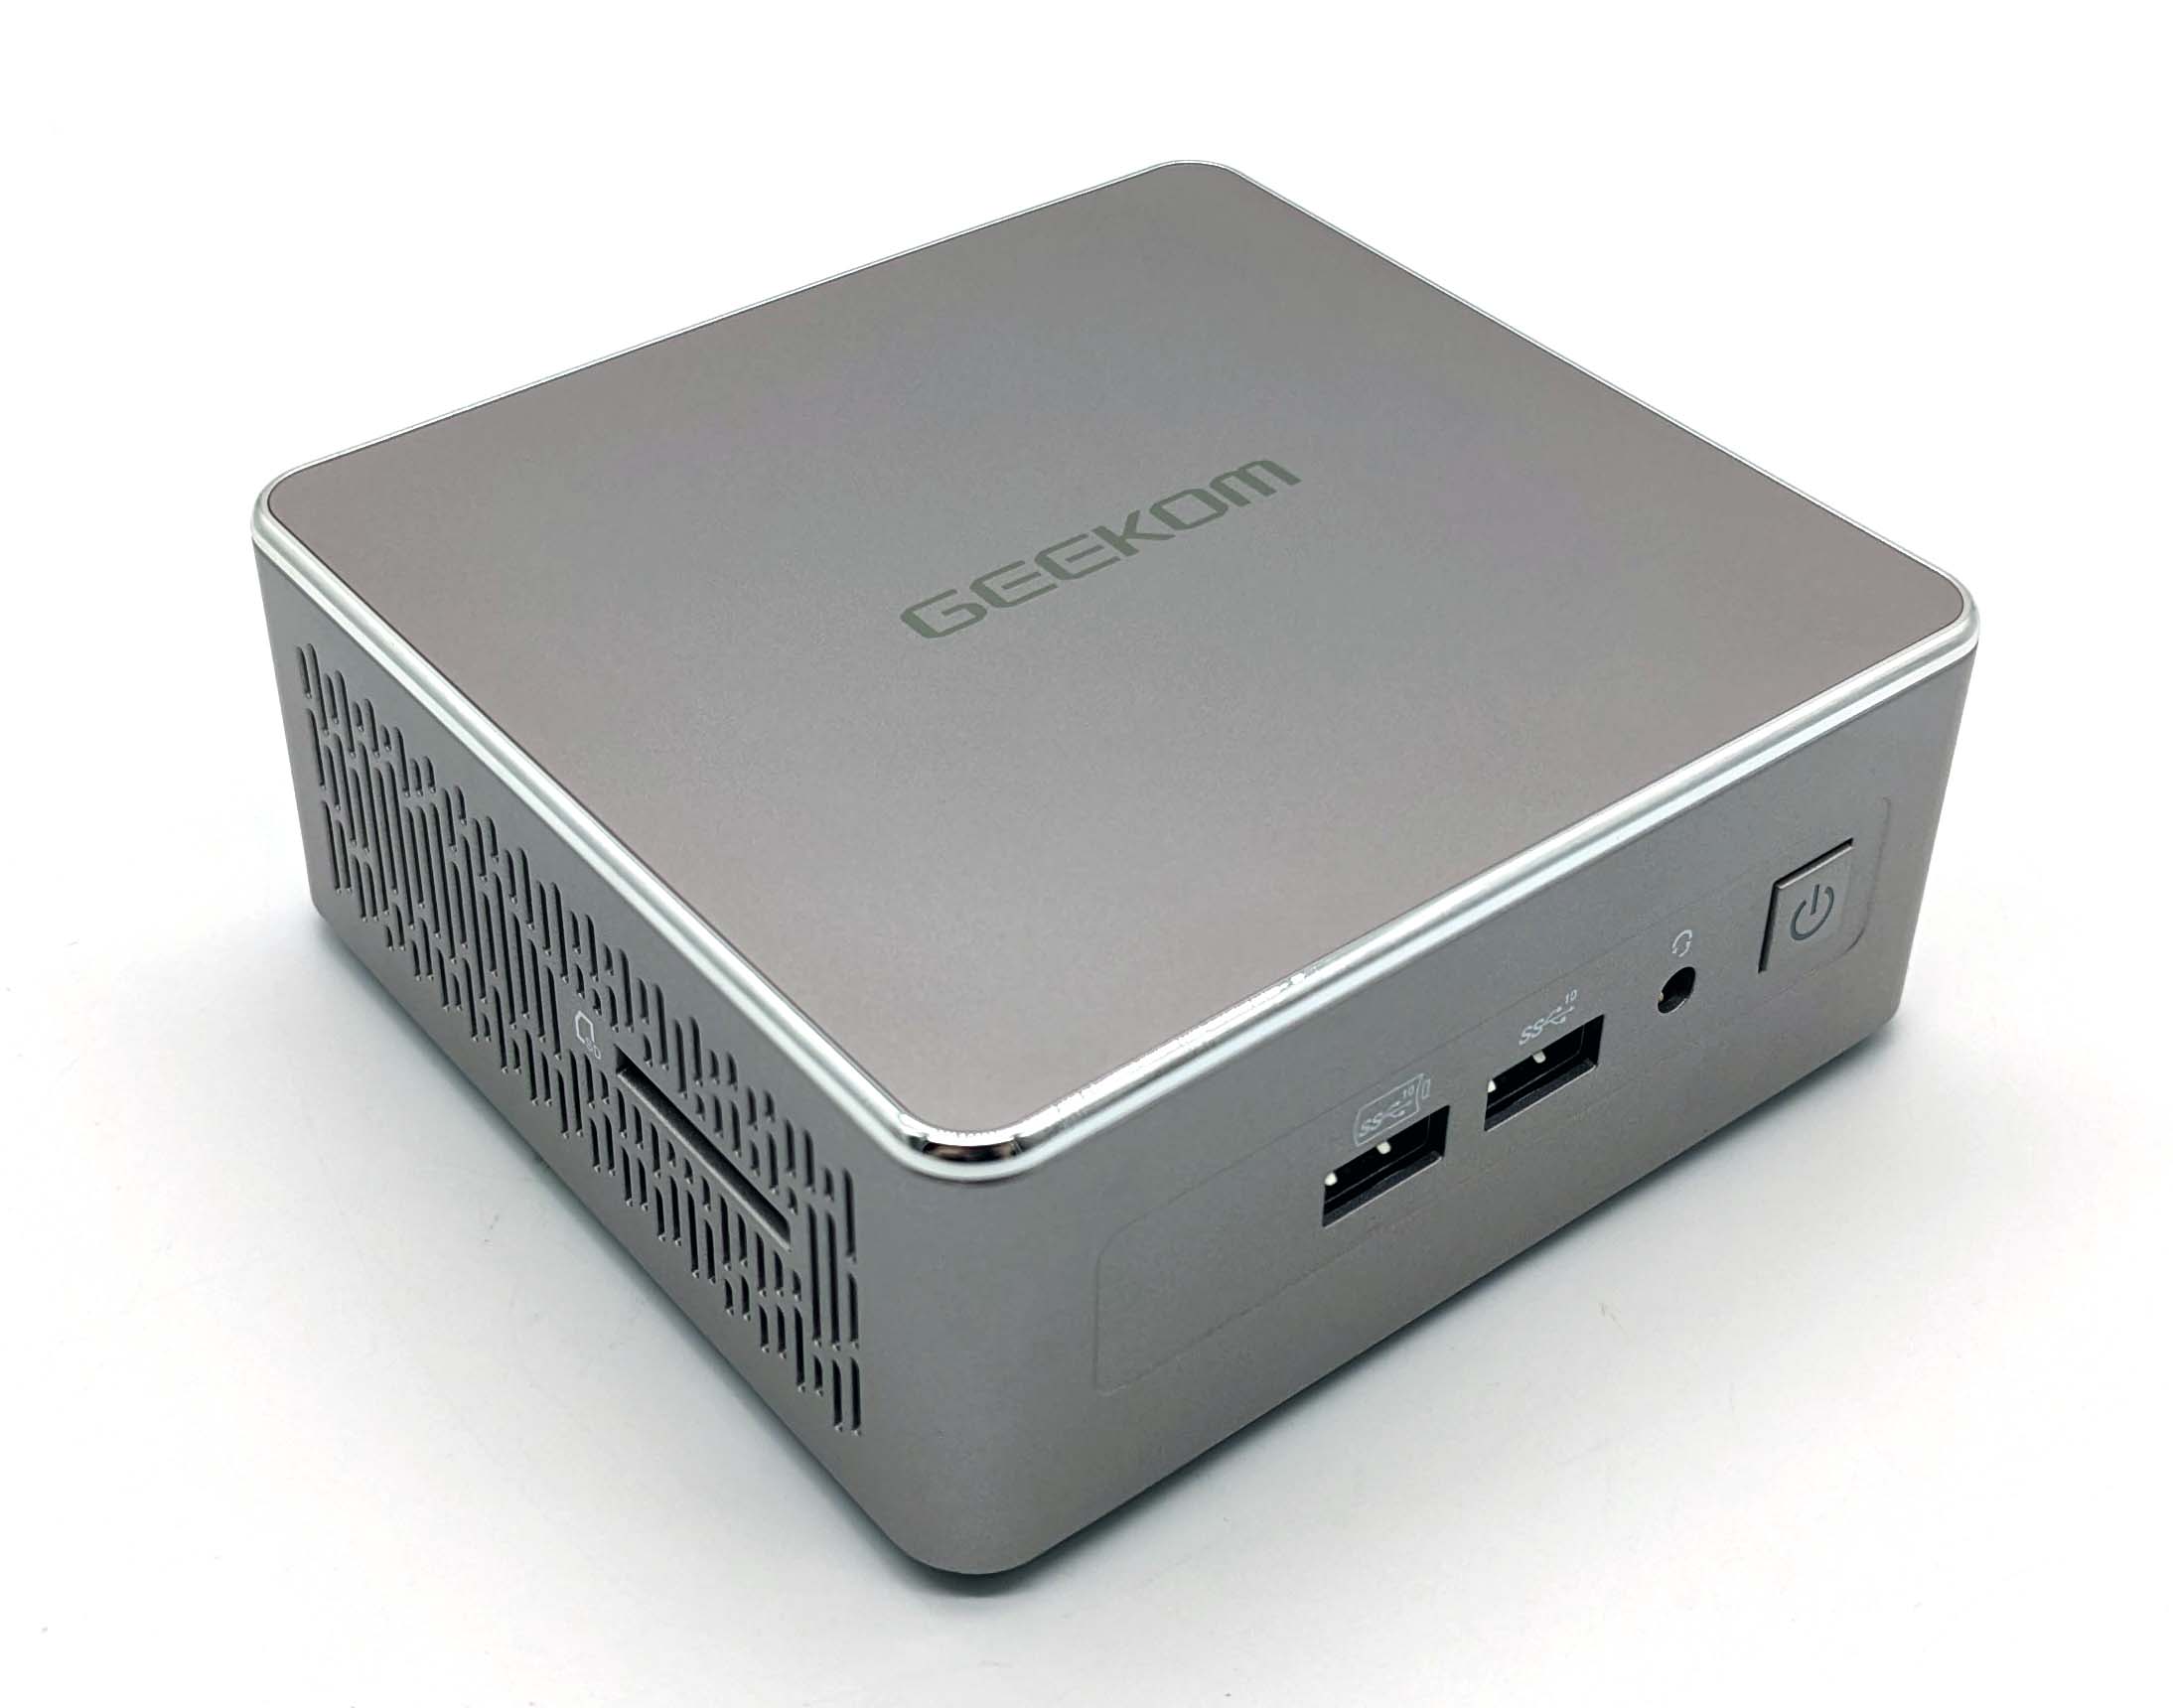 Geekom A5 Mini-PC im Test - Der Ryzen 5800H Prozessor von AMD als Zwischending